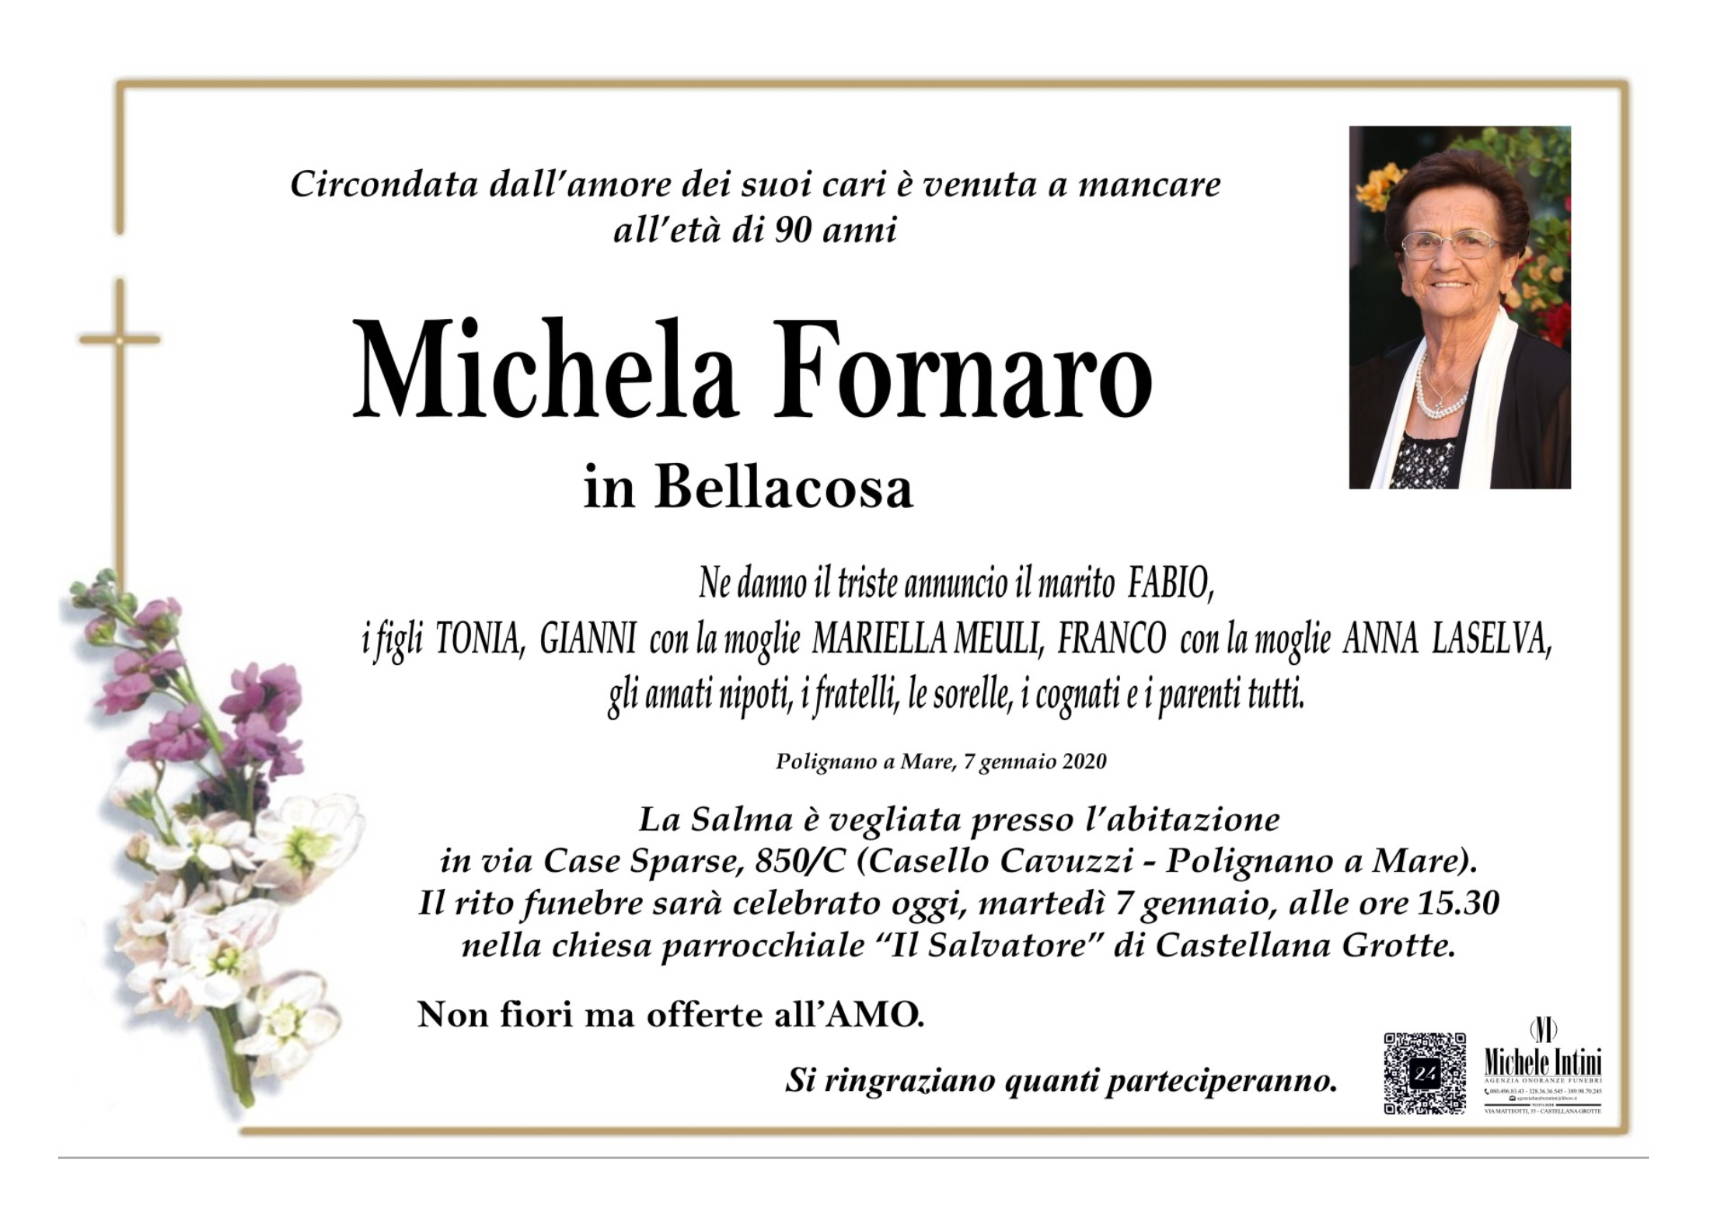 Michela Fornaro